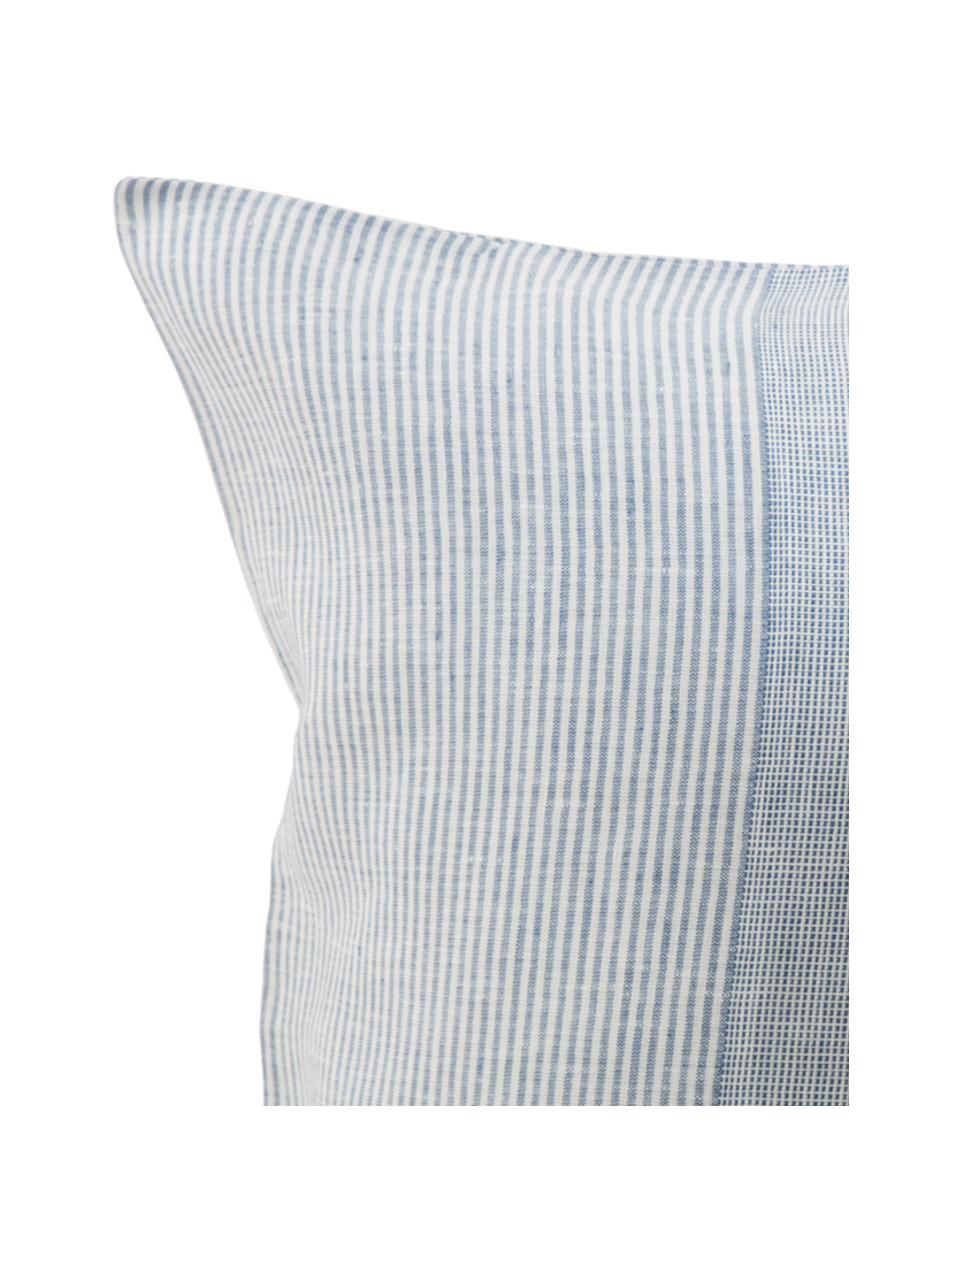 Parure copripiumino in lino Unico, Azzurro, blu scuro, bianco, 250 x 260 cm + 2 federe 50 x 80 cm